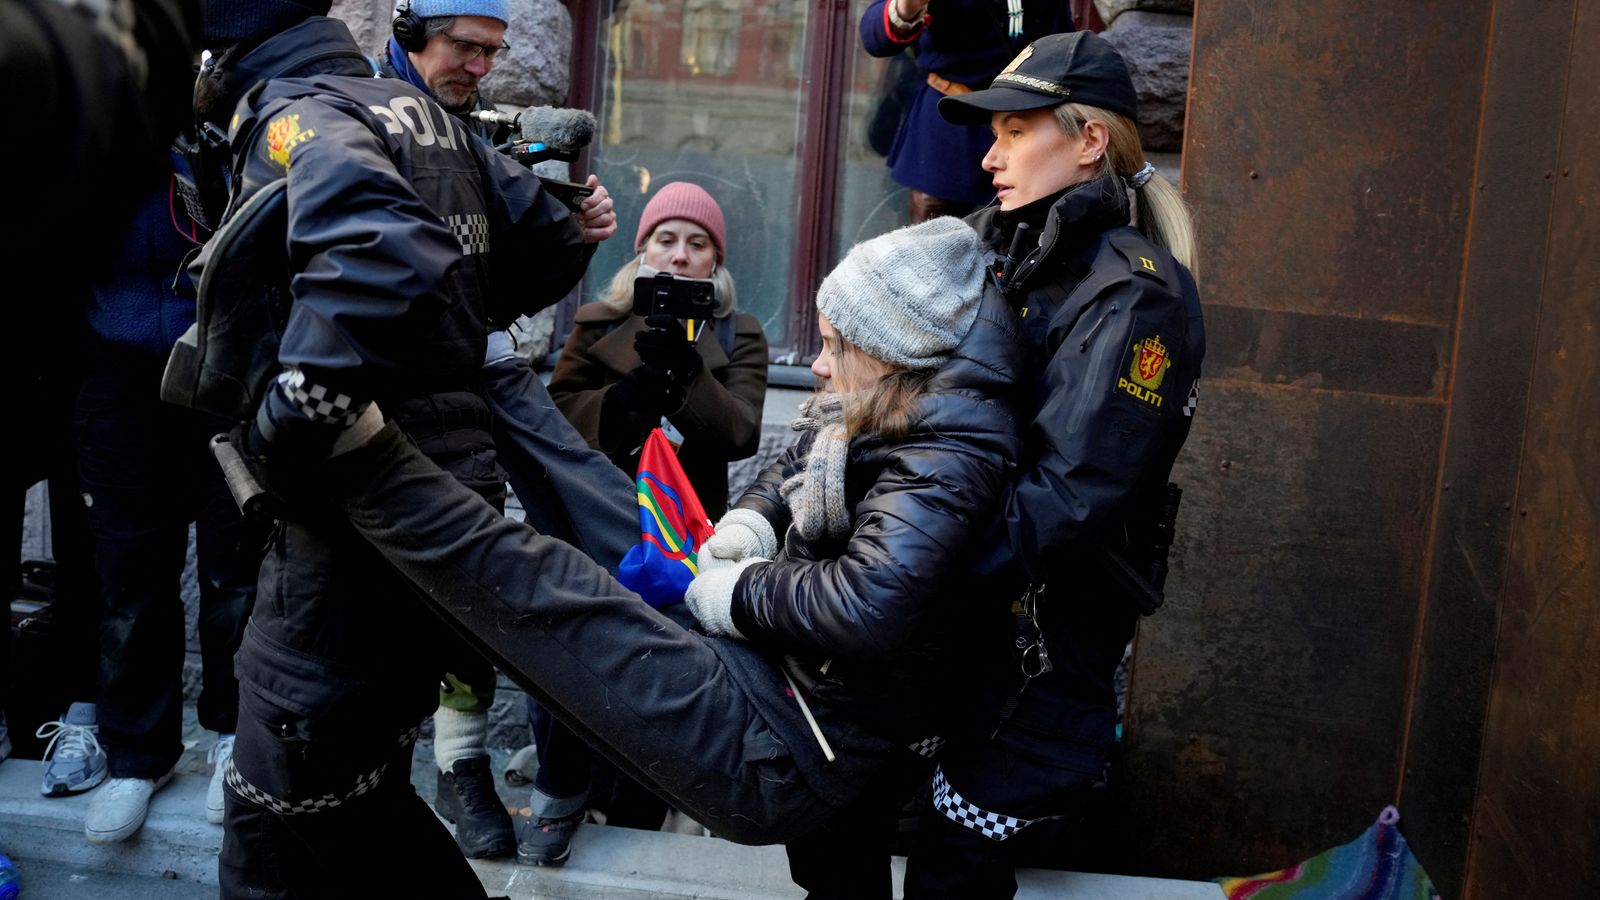 Greta Thunberg bei einem Protest gegen Farmwinde zweimal von der Polizei festgenommen |  Weltnachrichten